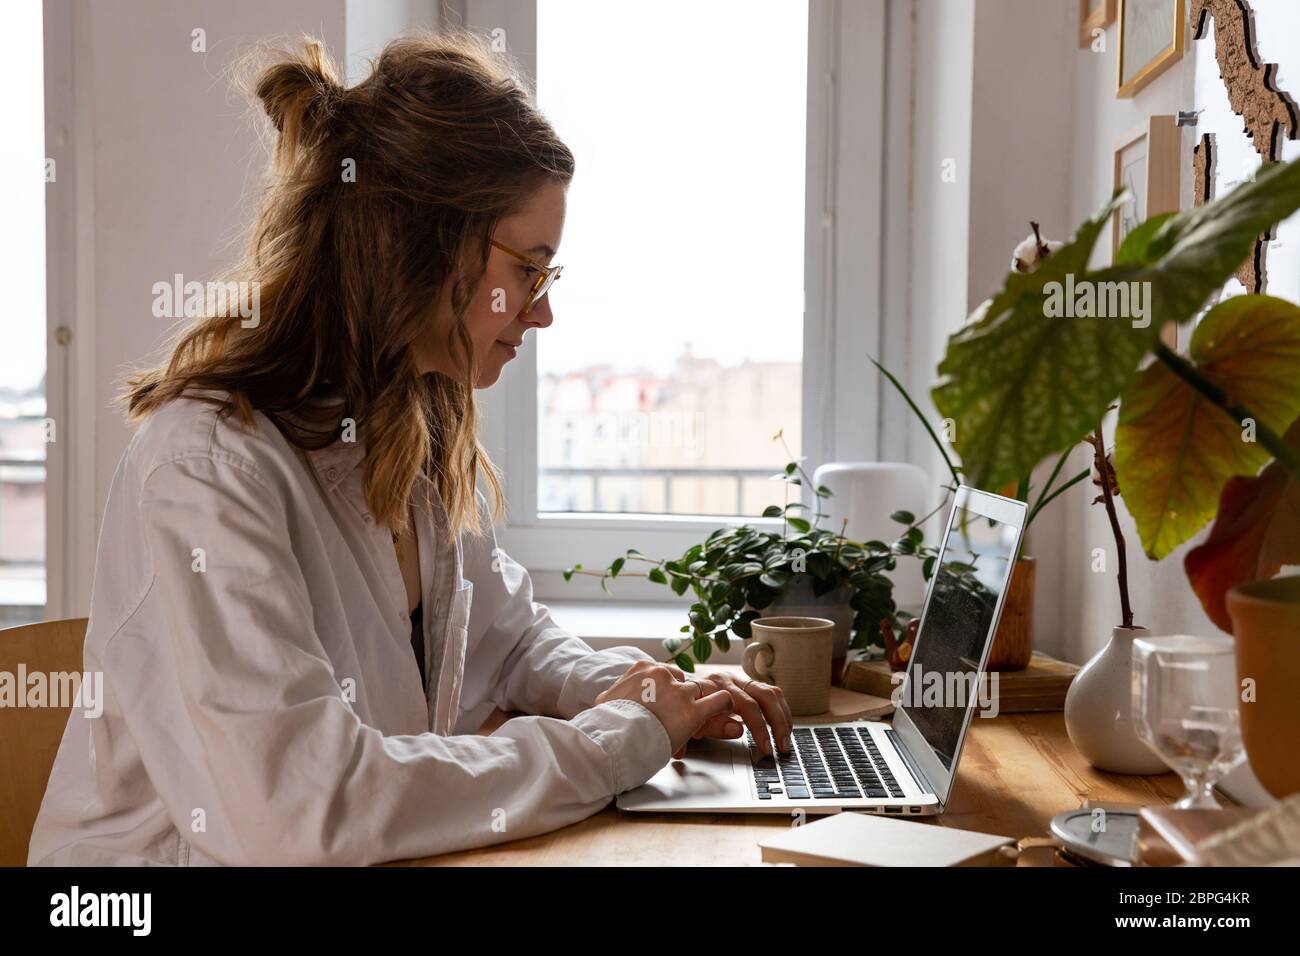 Junge Frau freiberufliche/Designer arbeitet am Computer aus dem Home Office während der Selbstisolierung durch Coronavirus. Gemütlicher Arbeitsplatz umgeben von Pflanzen. Re Stockfoto